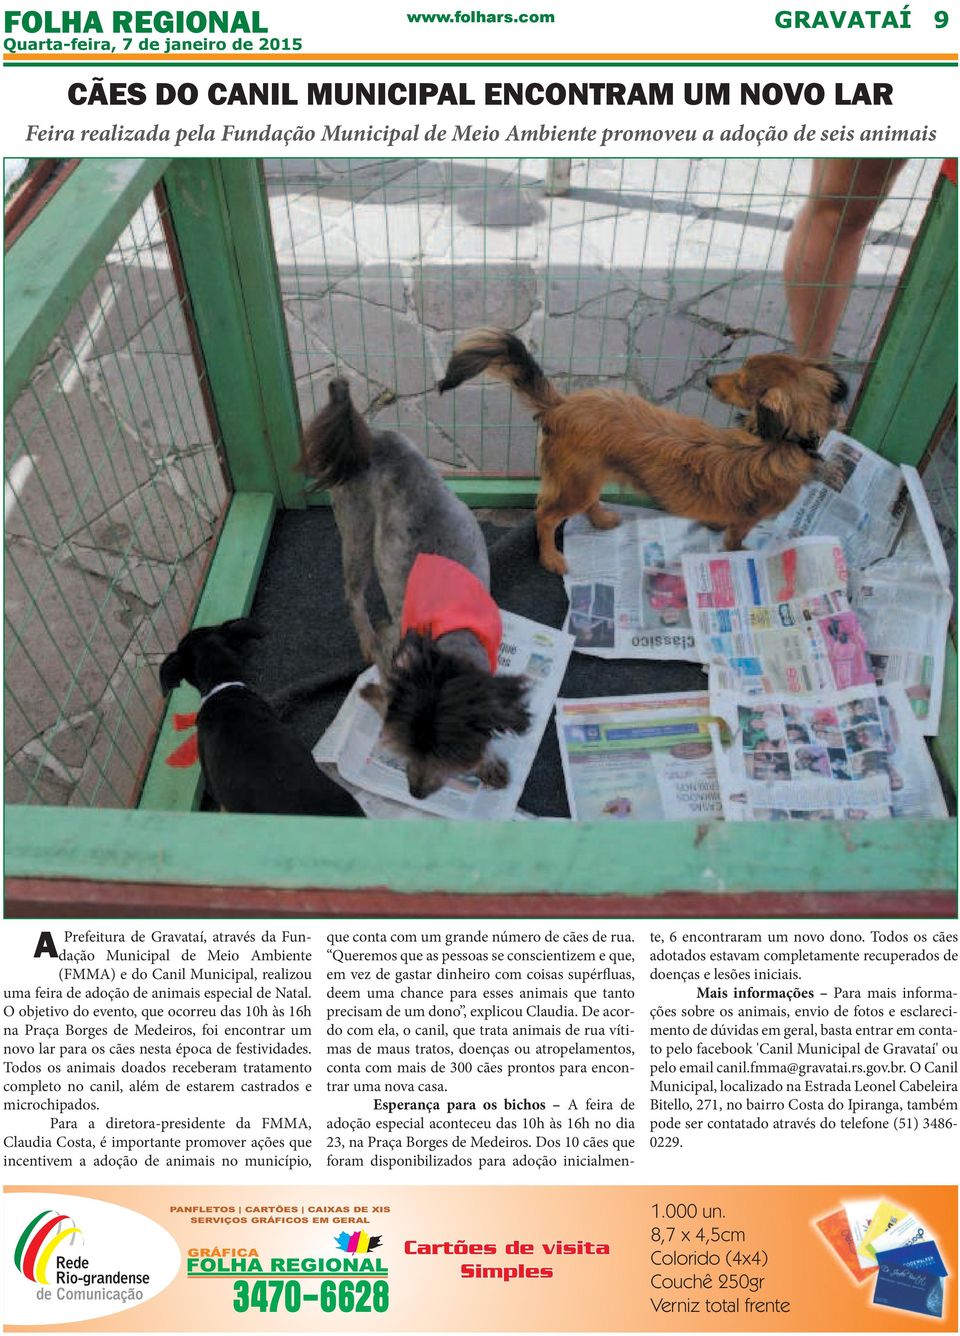 O objetivo do evento, que ocorreu das 10h às 16h na Praça Borges de Medeiros, foi encontrar um novo lar para os cães nesta época de festividades.